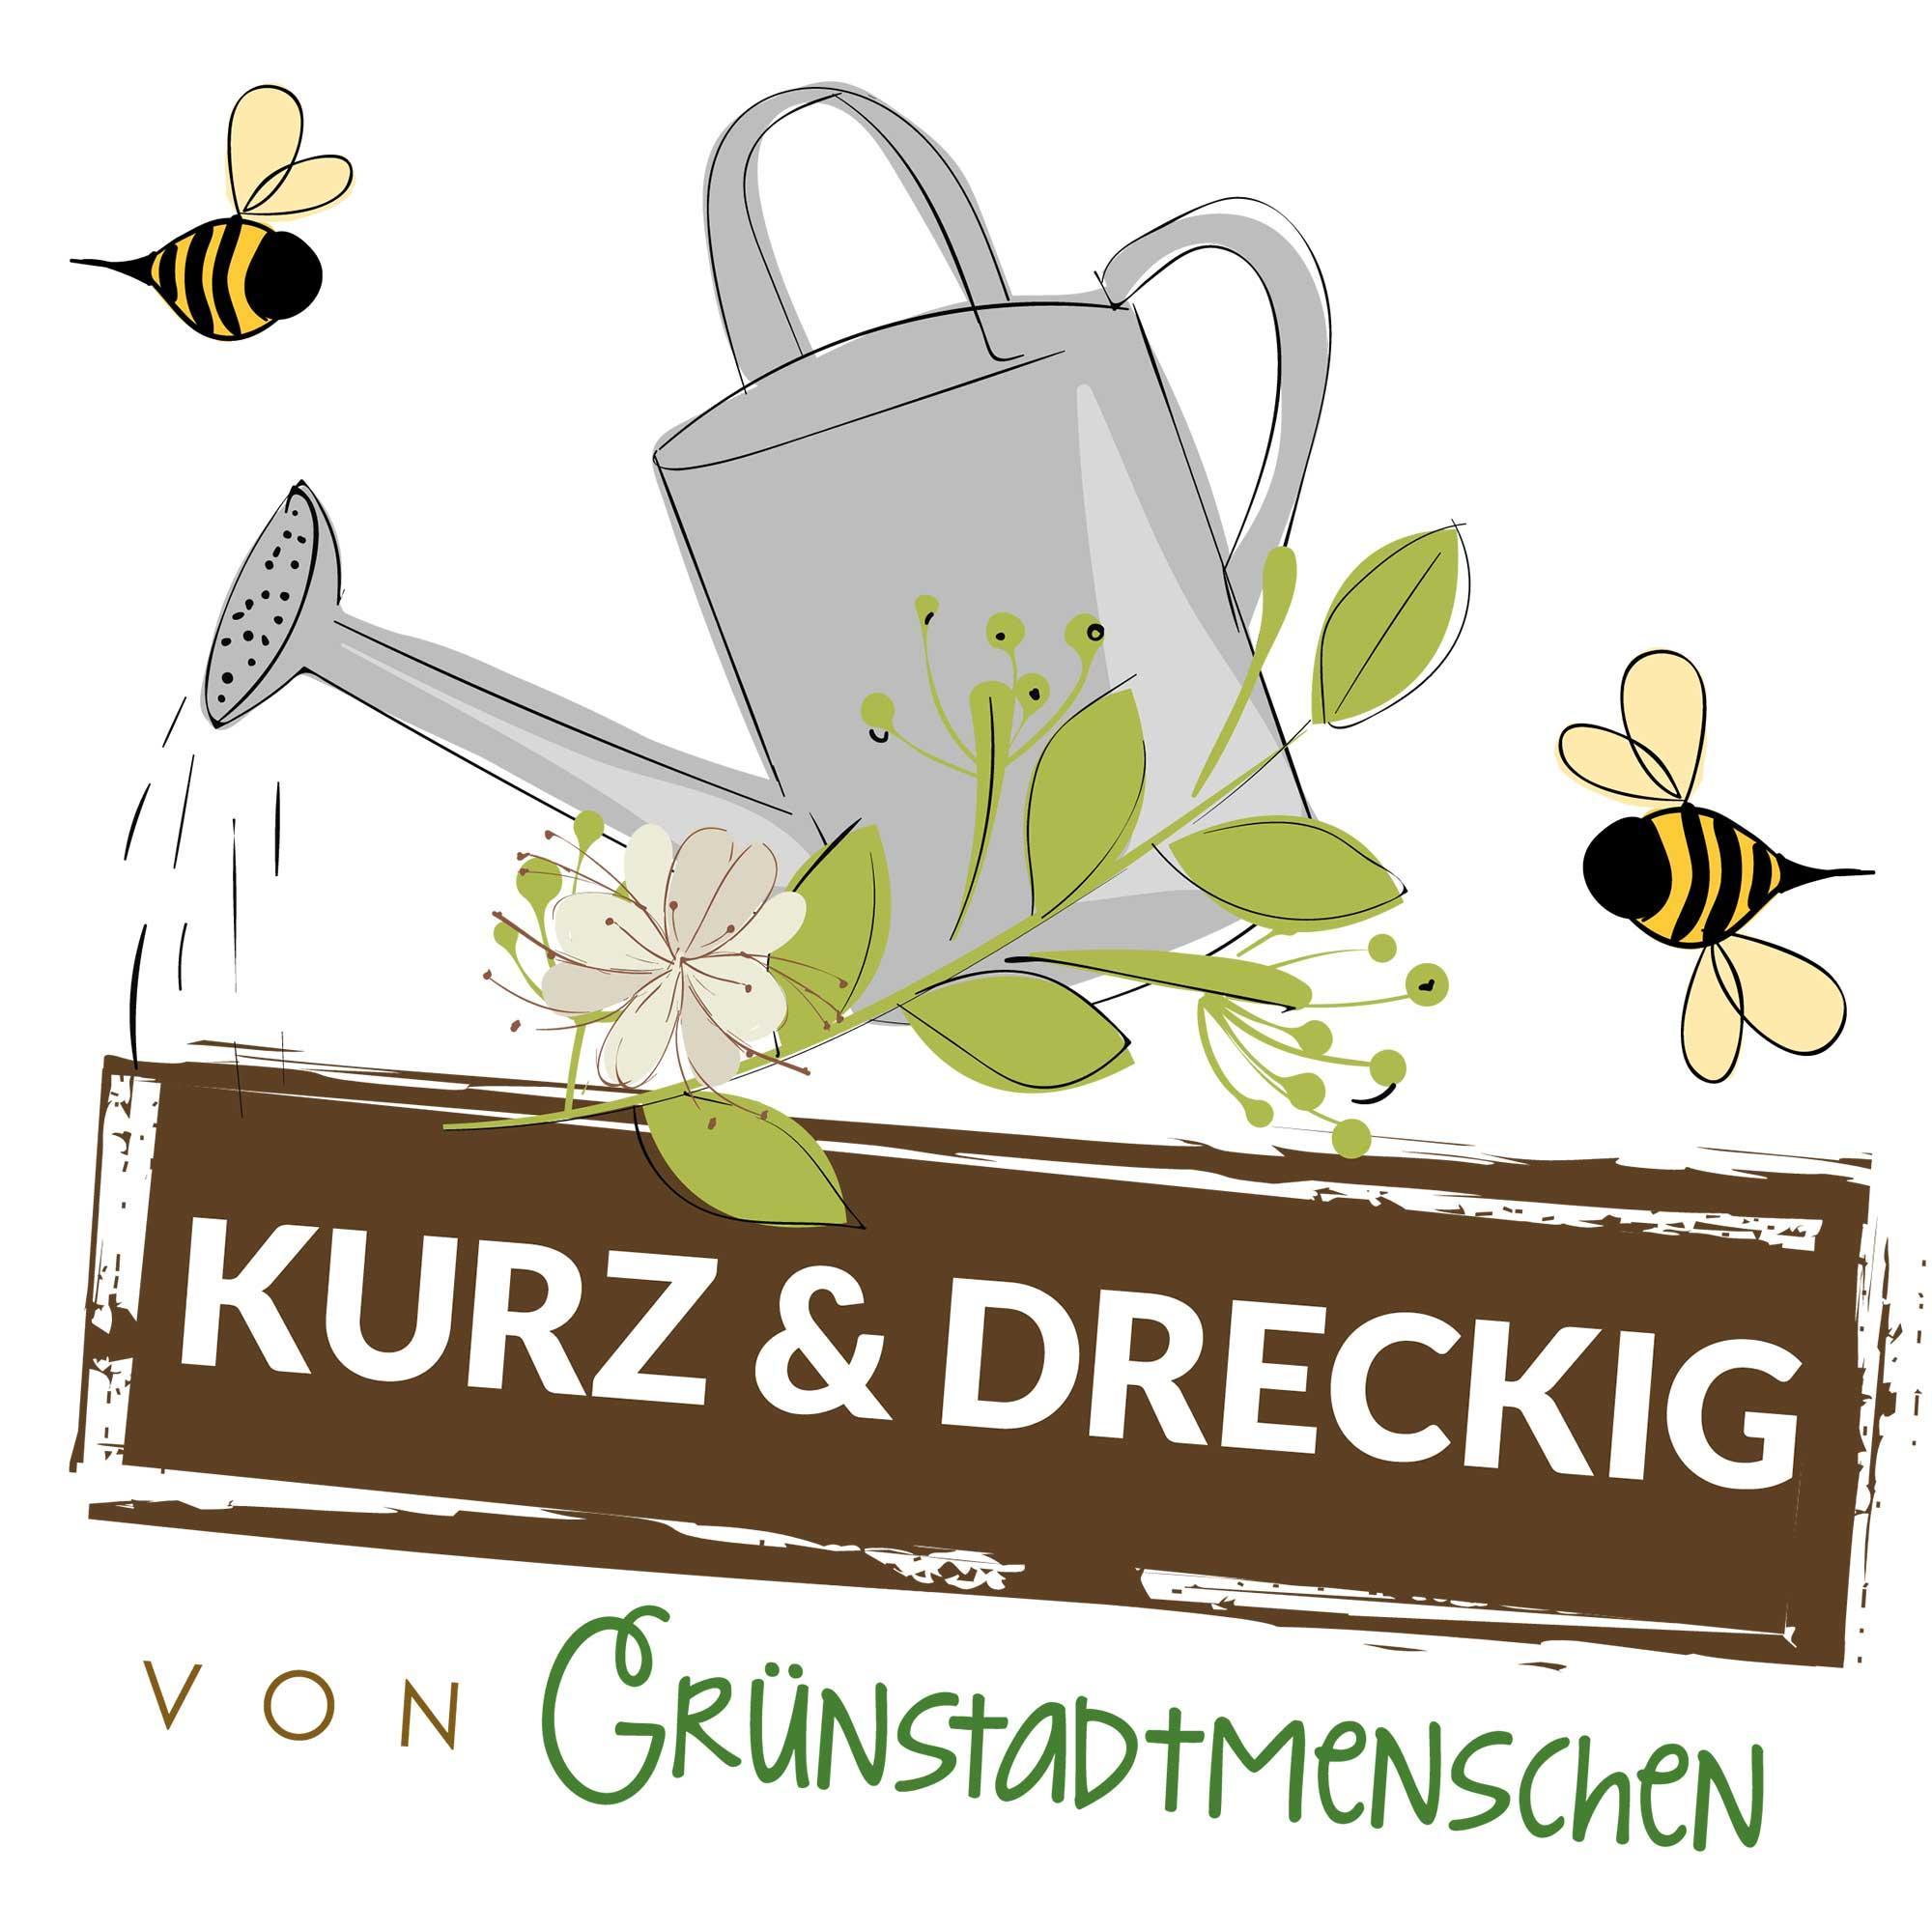 #37 Kurz & dreckig: Karinas Gartentipps für den Juli